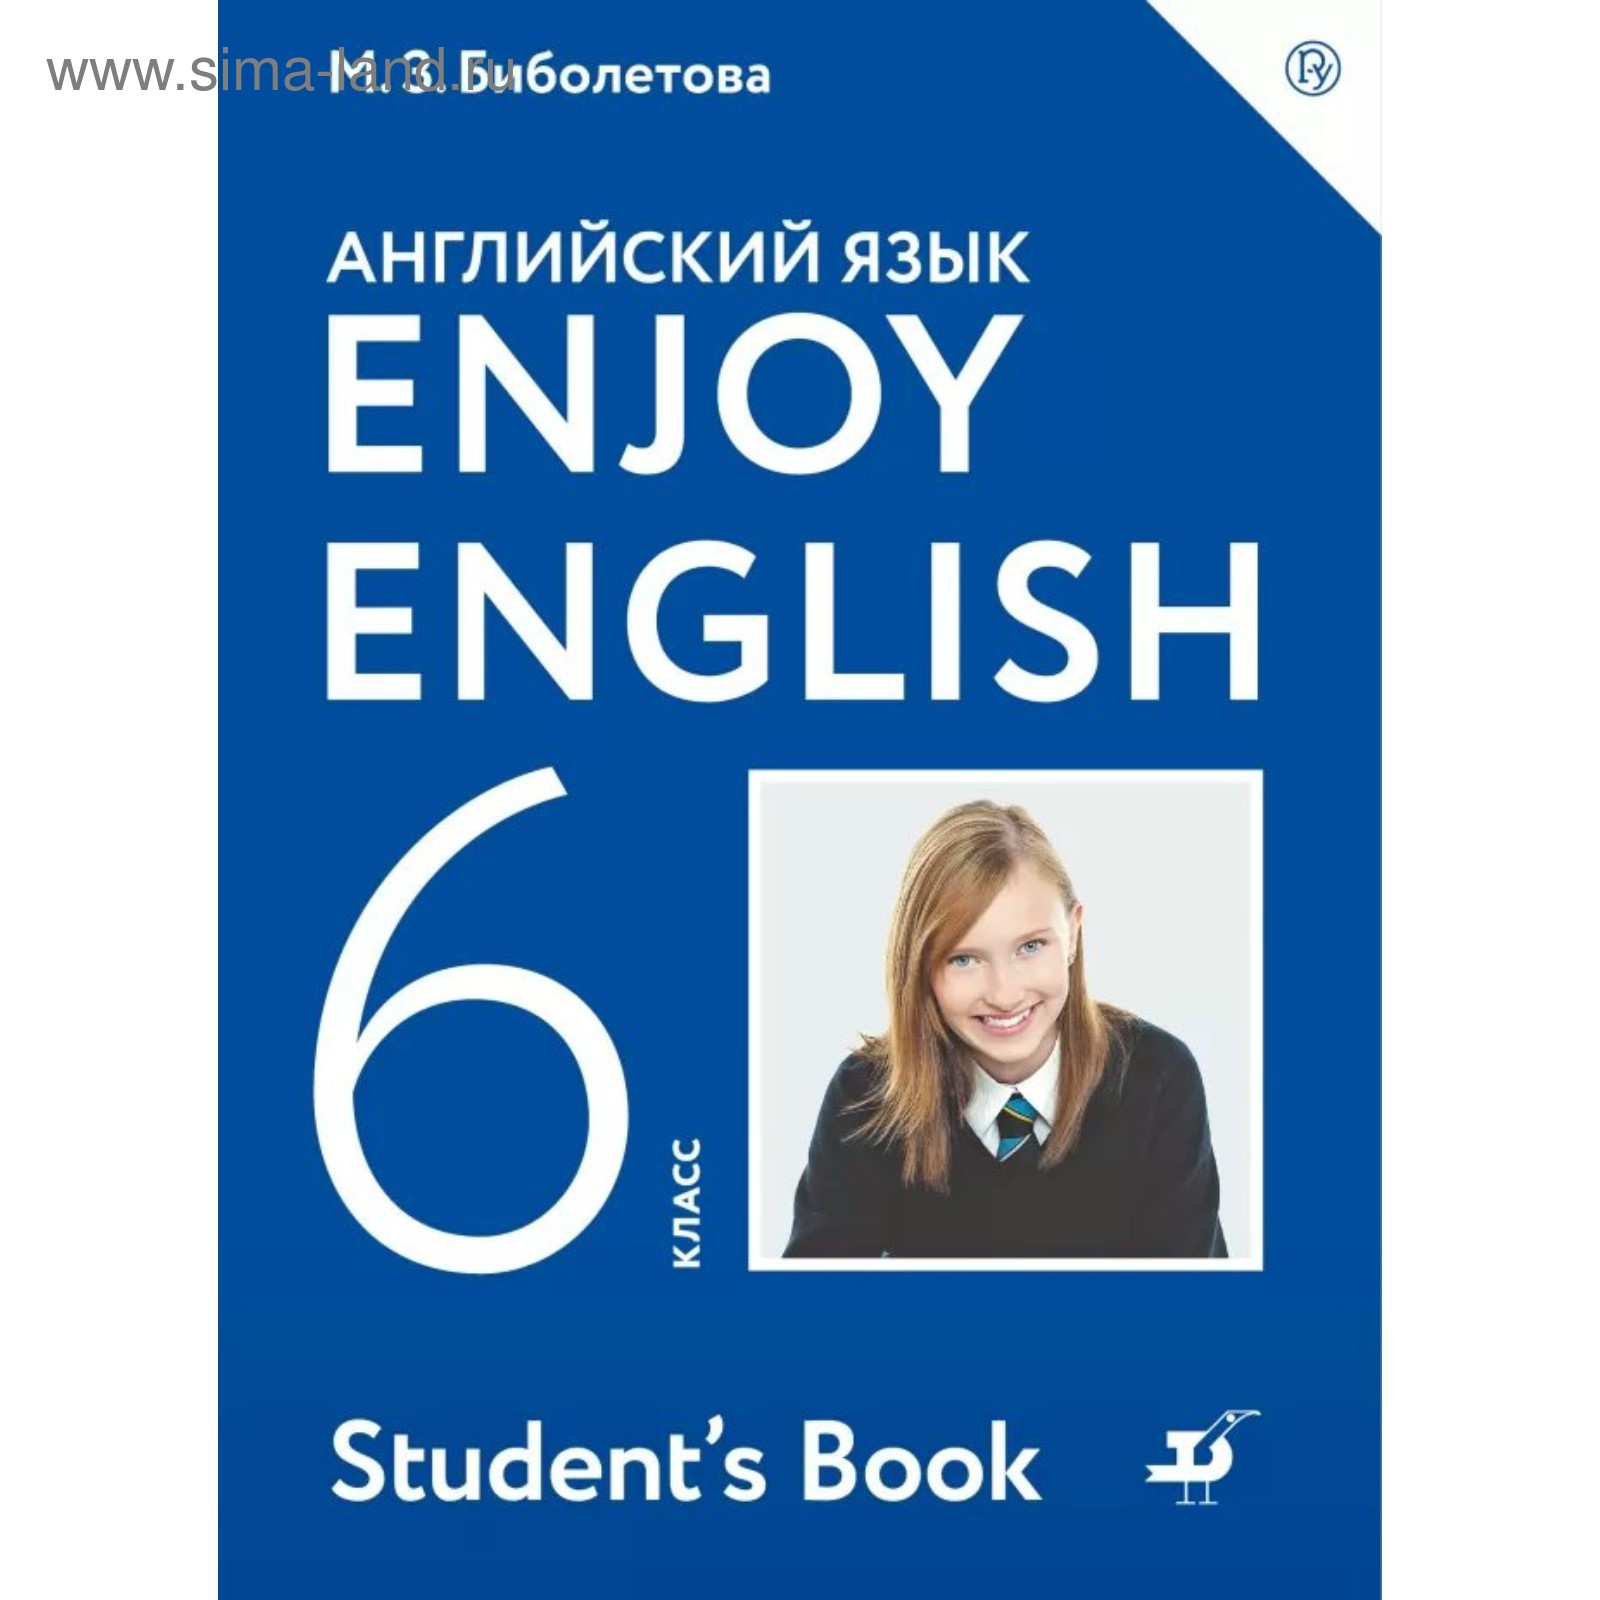 Английский Язык. Enjoy English. 6 Класс. Учебник. Биболетова М. З.